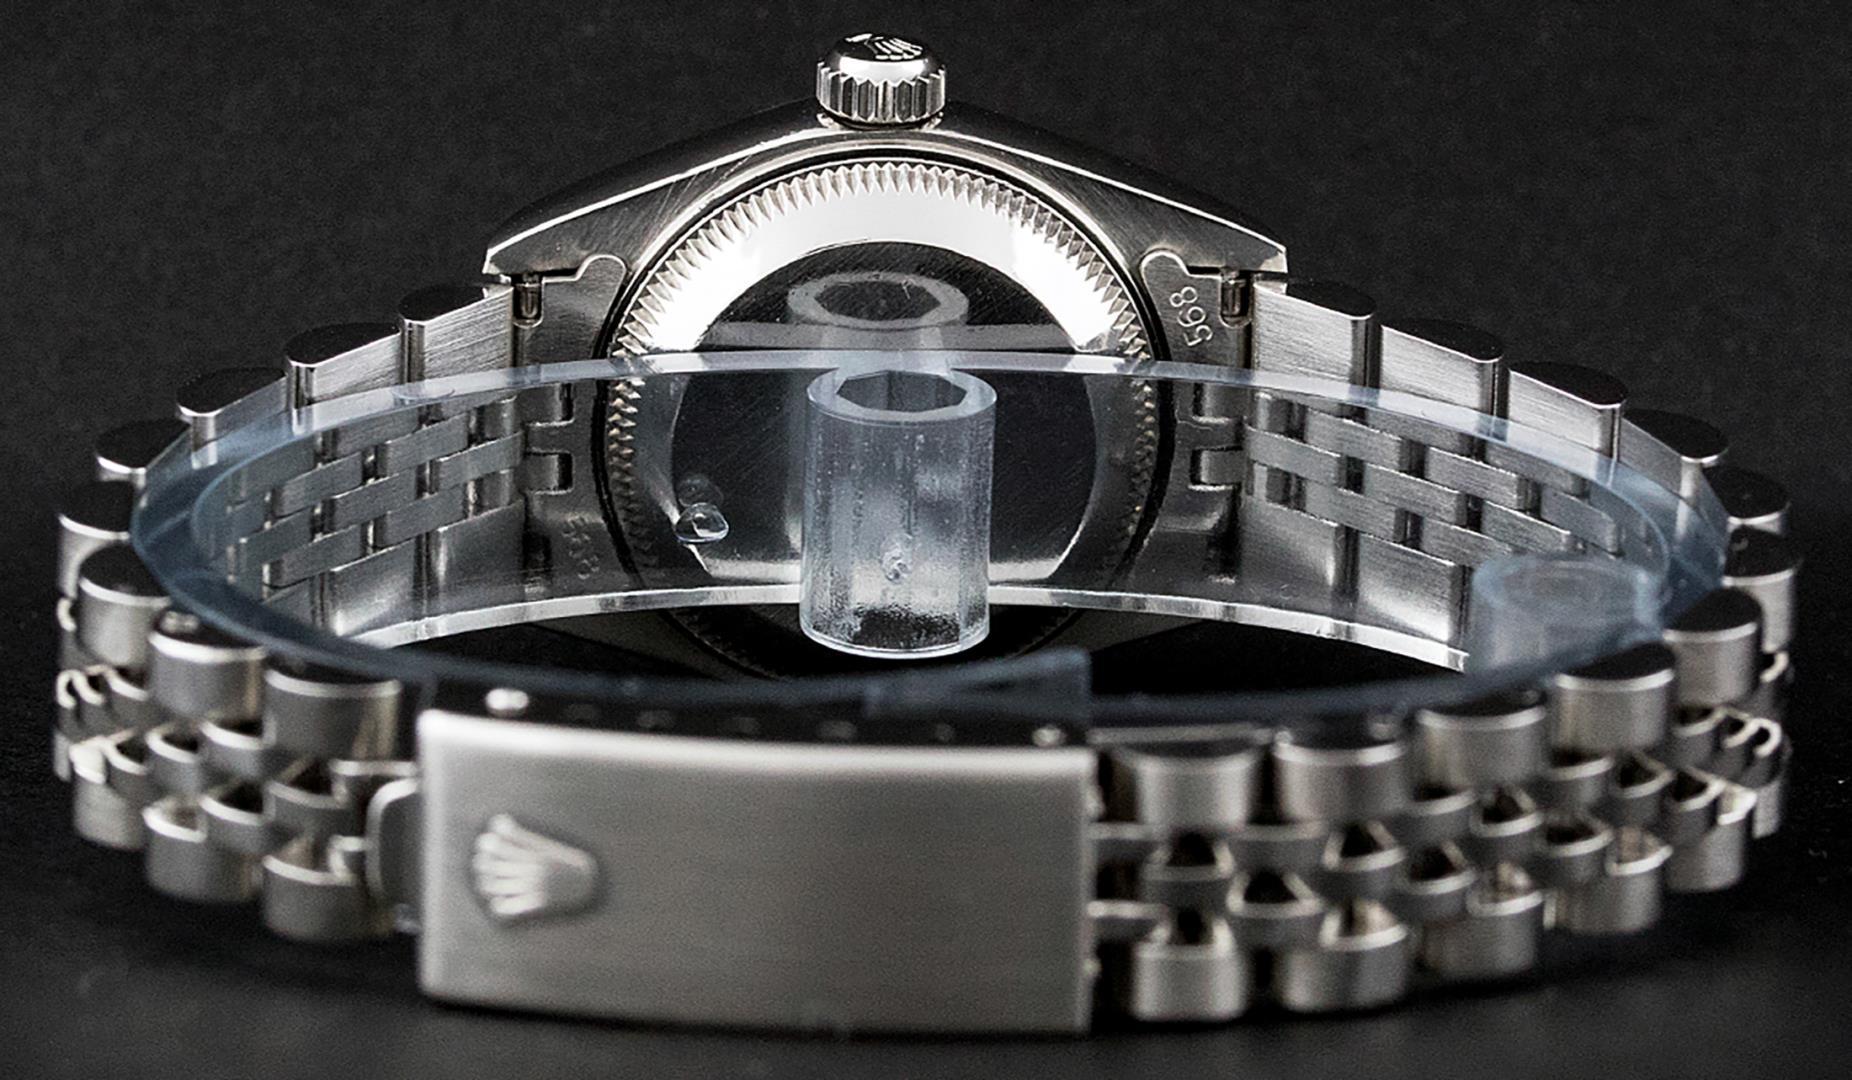 Rolex Ladies Stainless Steel Silver Index Datejust Wristwatch